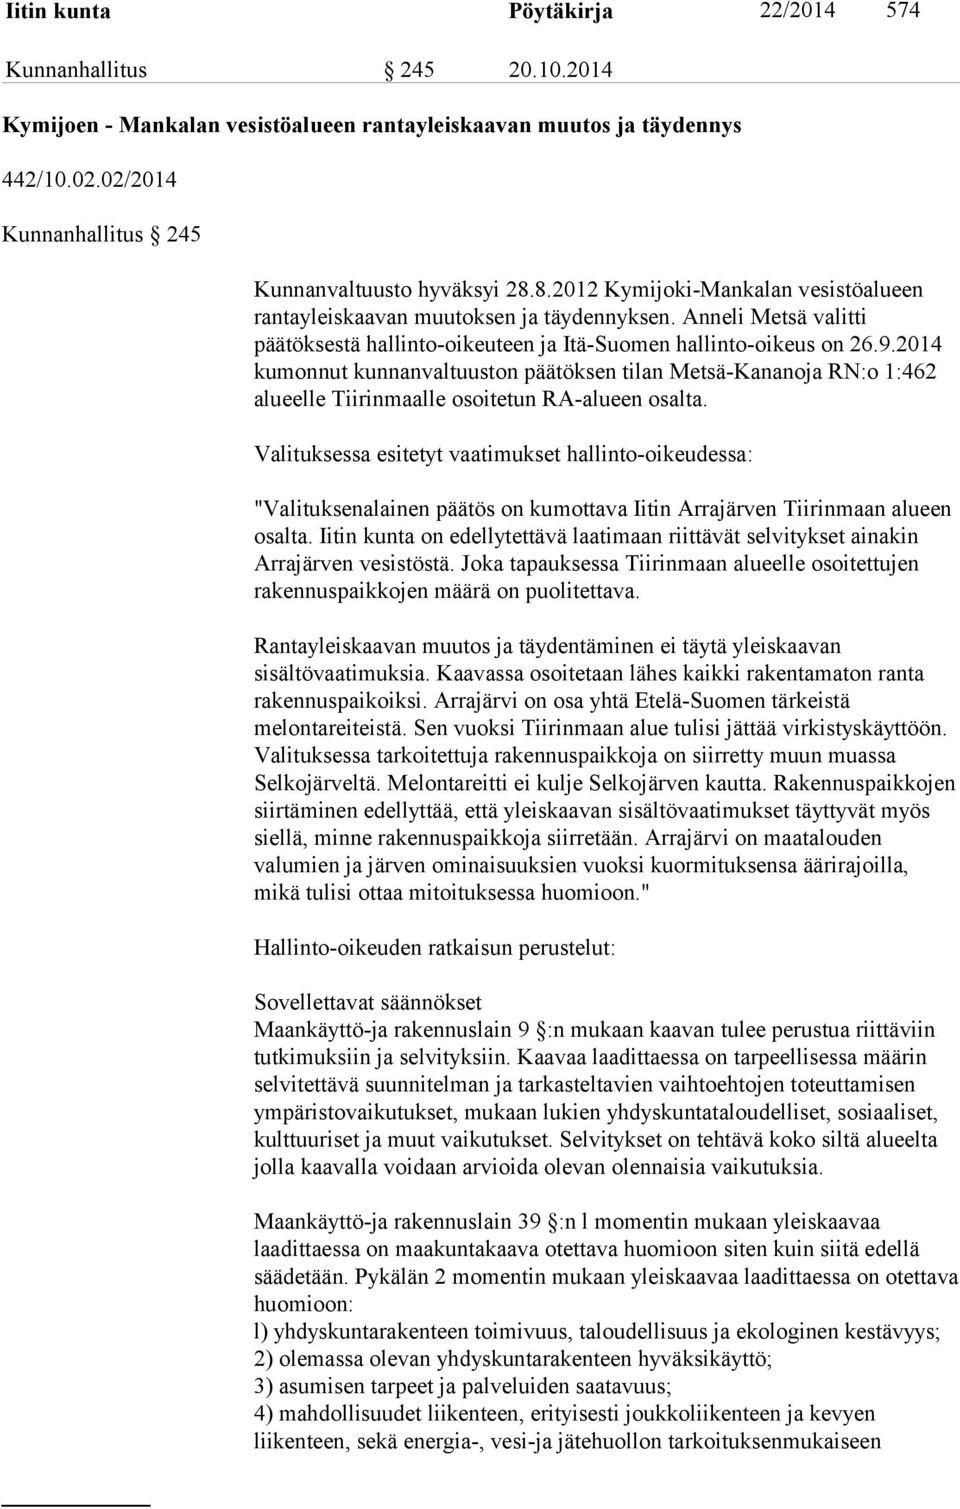 Anneli Metsä valitti päätöksestä hallinto-oikeuteen ja Itä-Suomen hallinto-oikeus on 26.9.